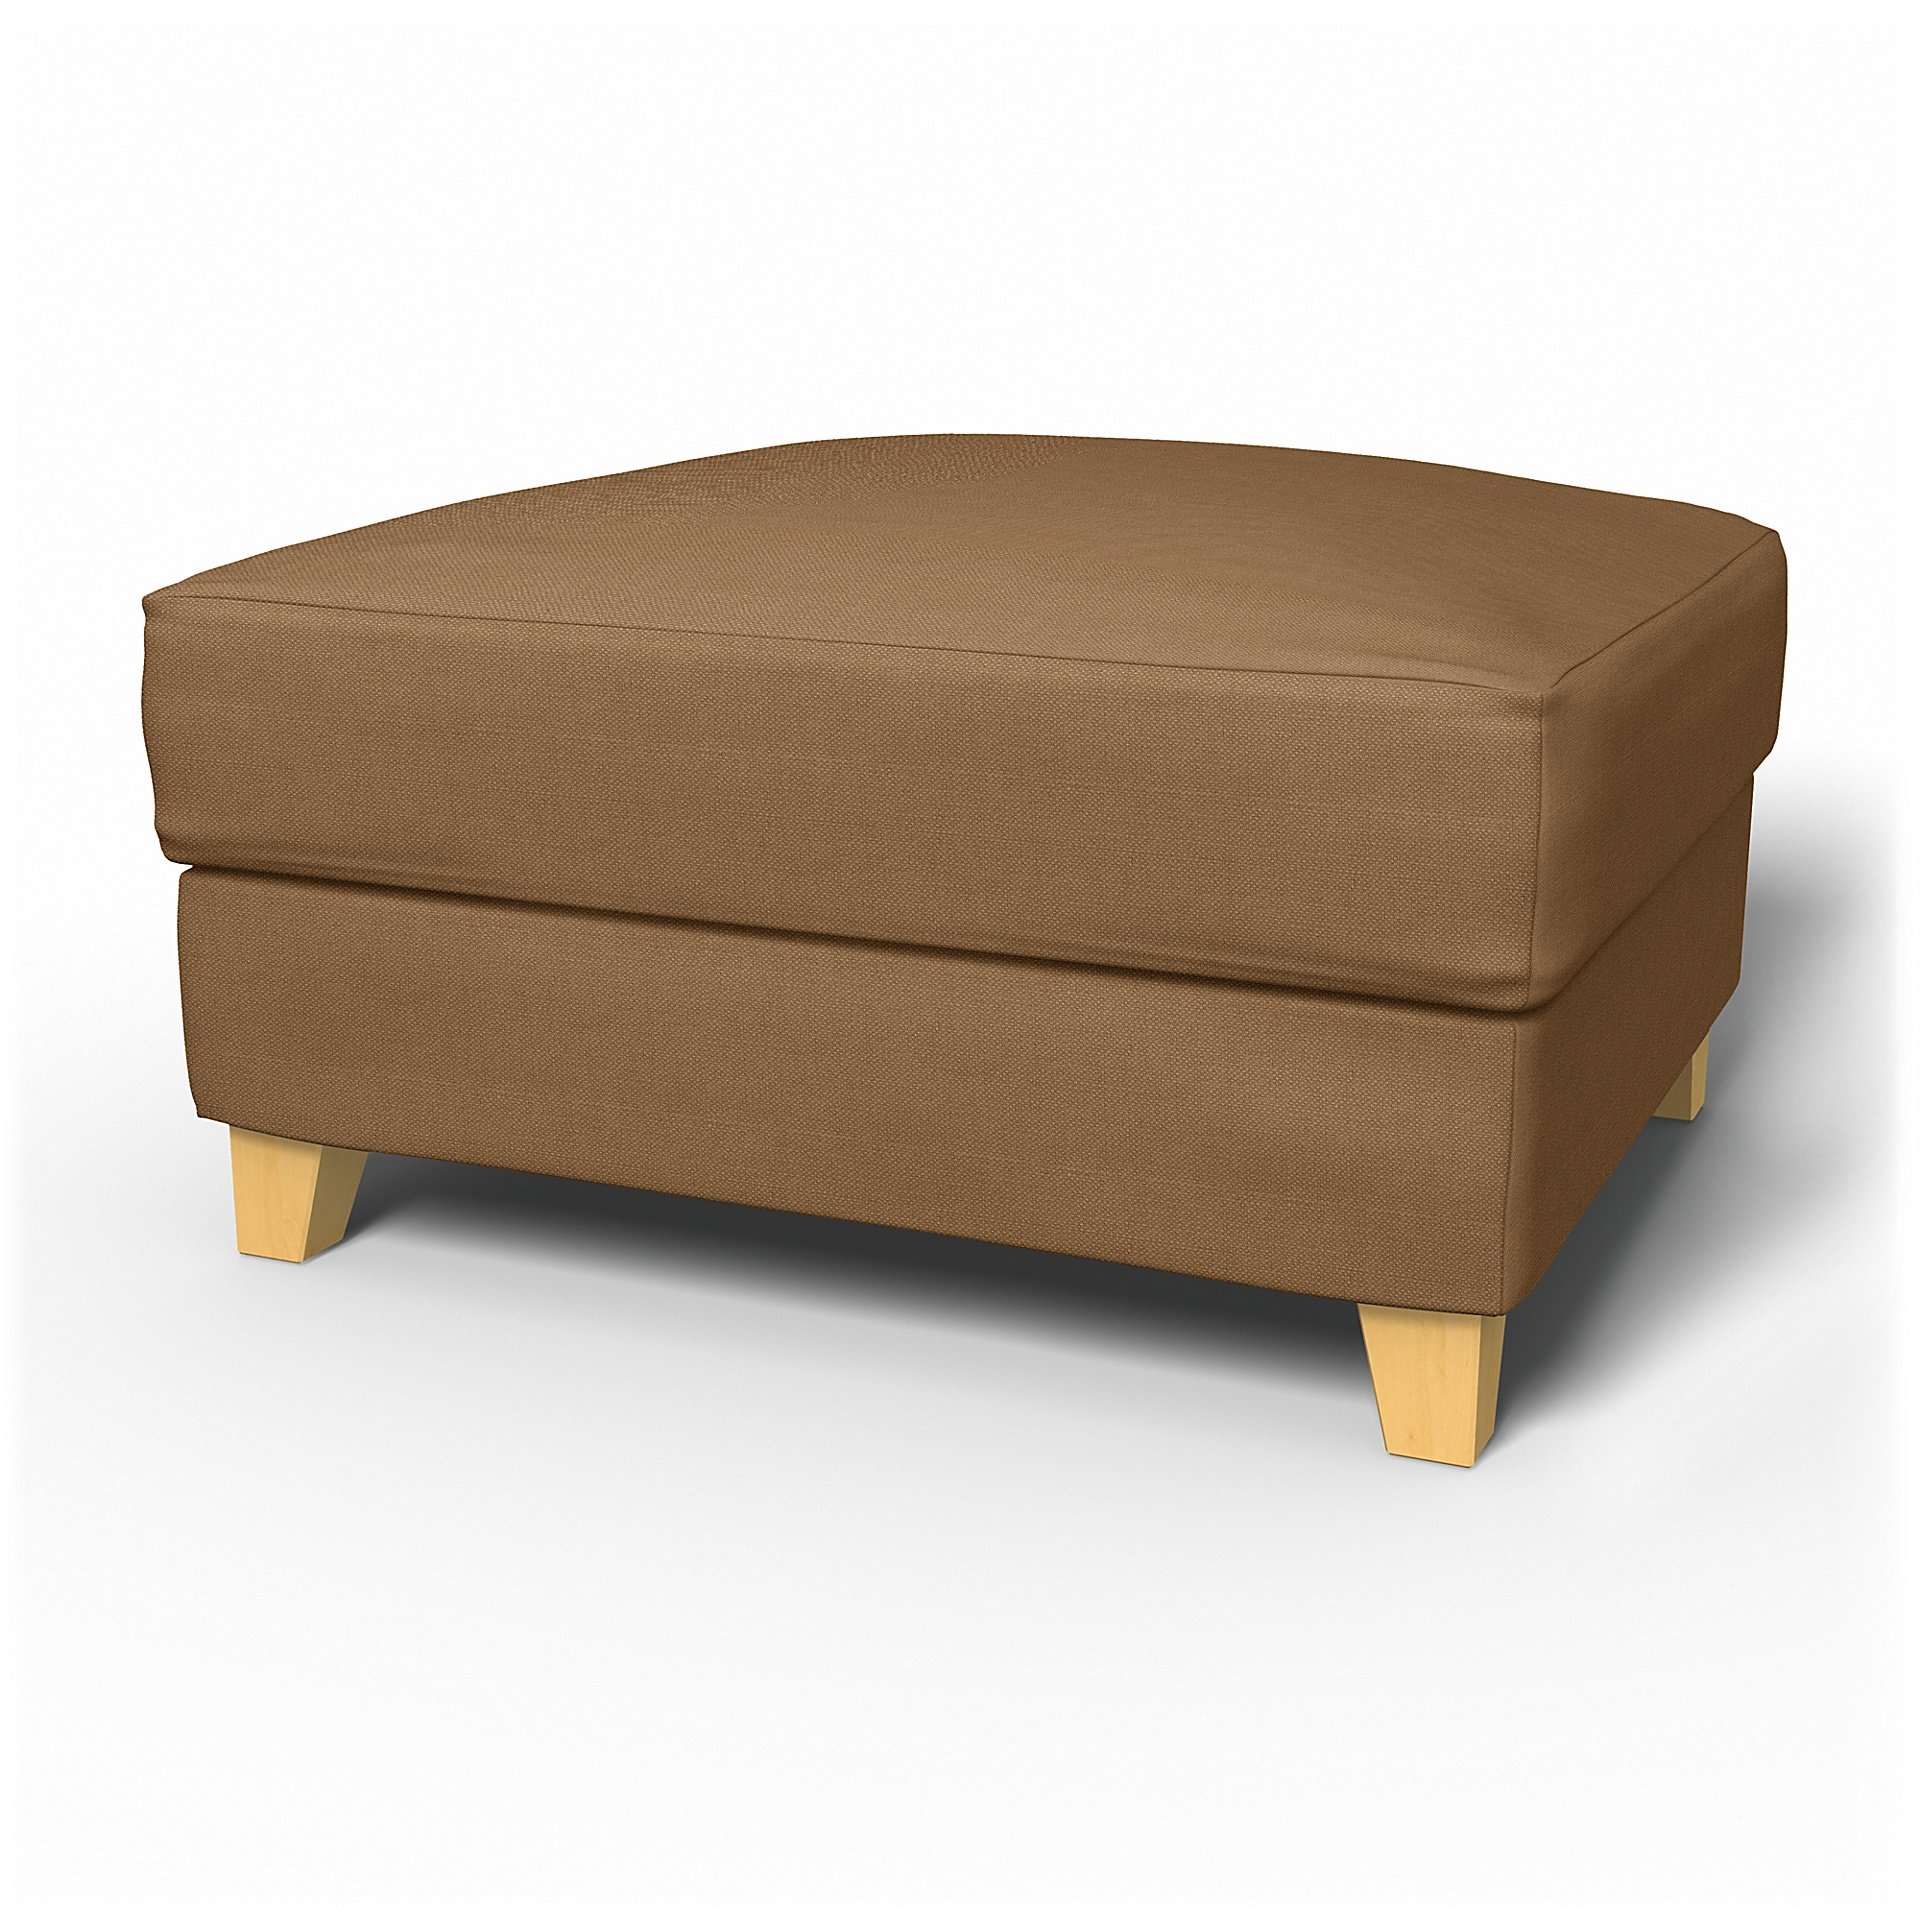 IKEA - Backa Footstool Cover, Nougat, Linen - Bemz